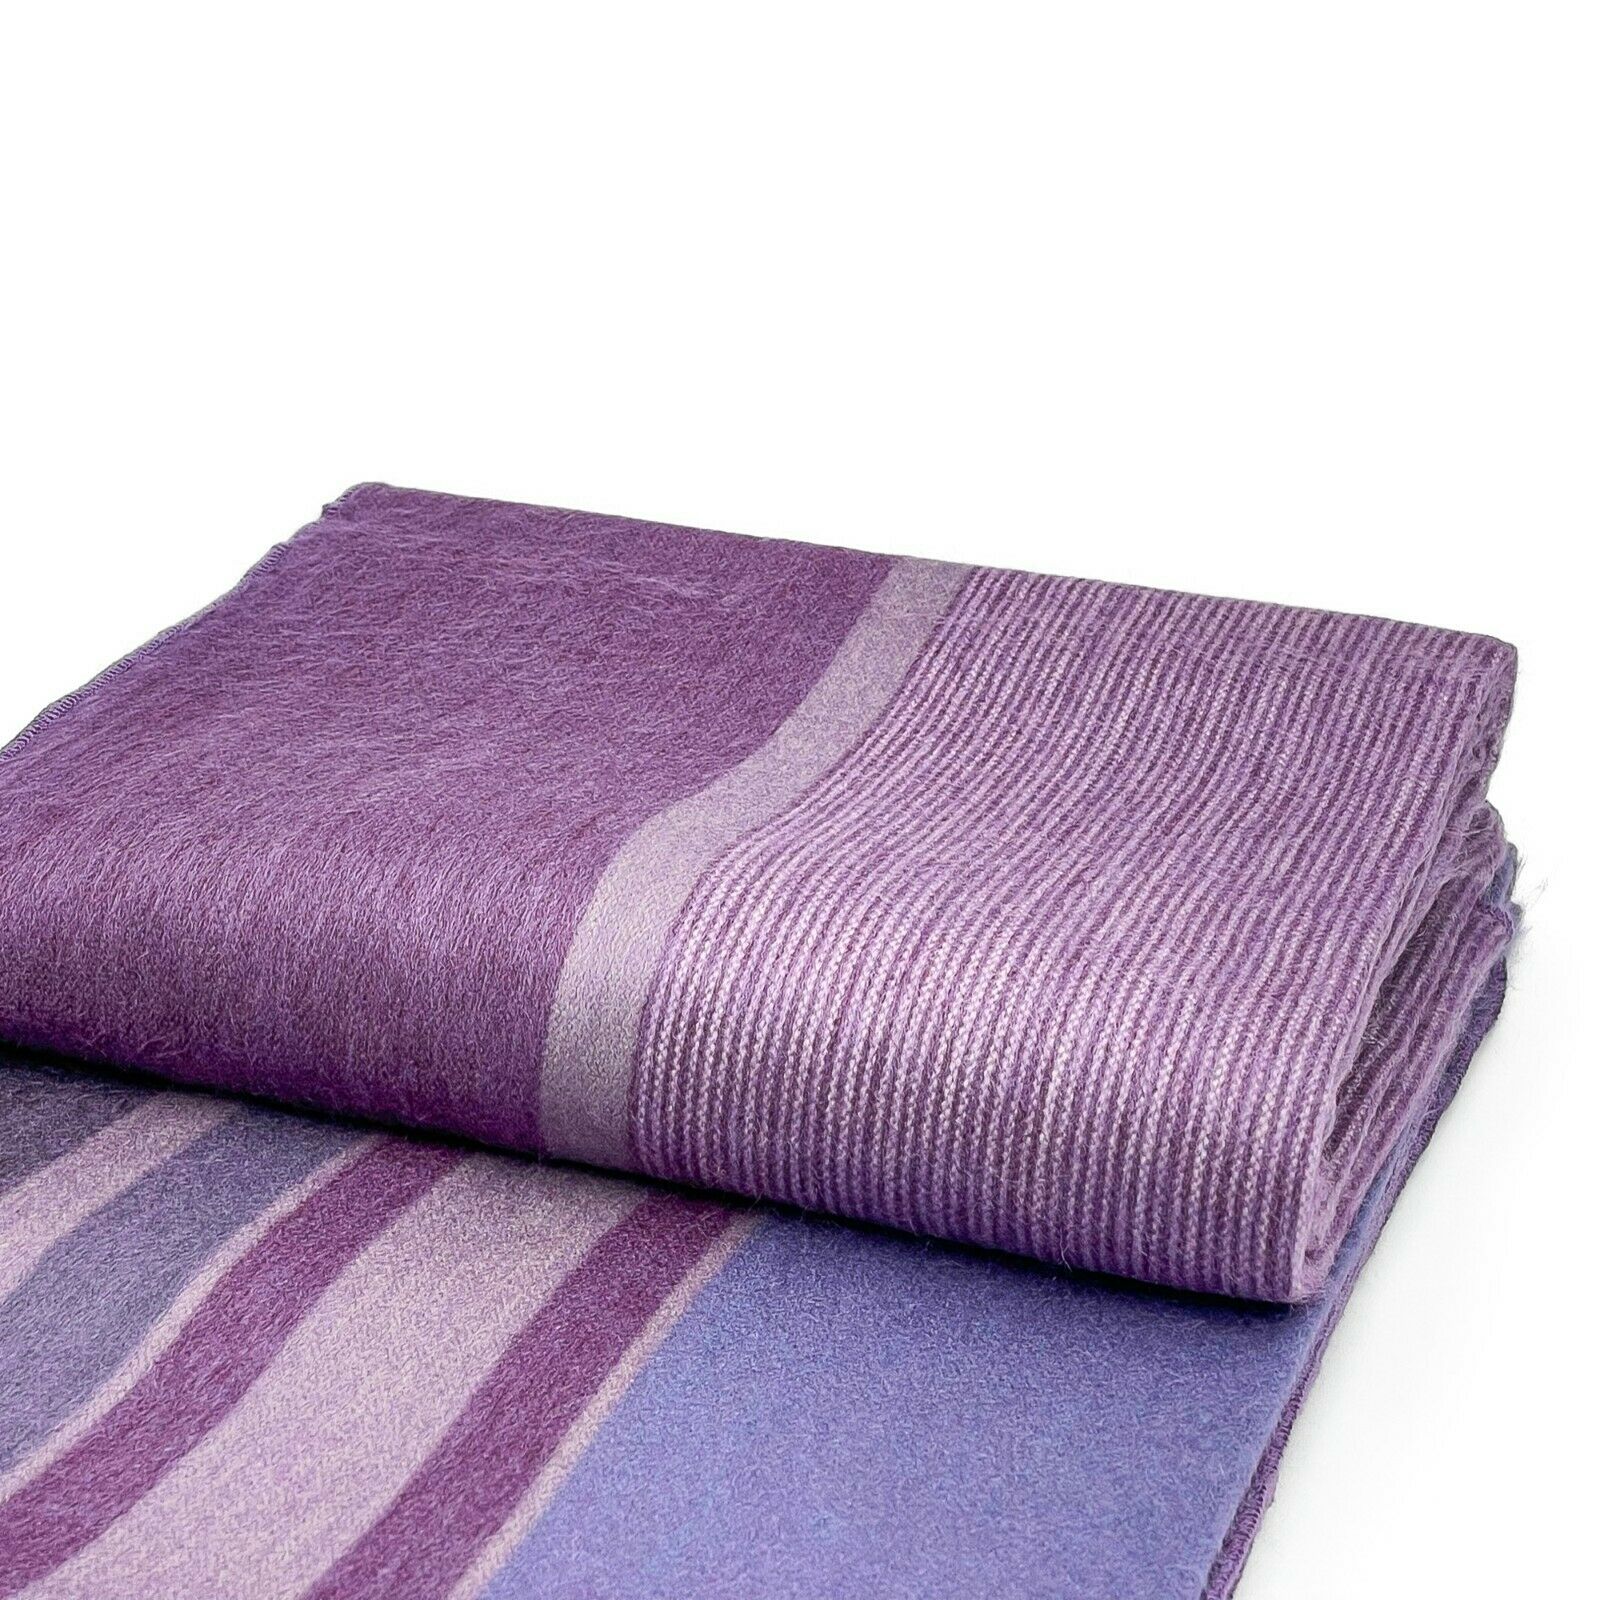 Chuquipata - Baby Alpaca Wool Throw Blanket / Sofa Cover - Queen 96" x 68" - striped purple